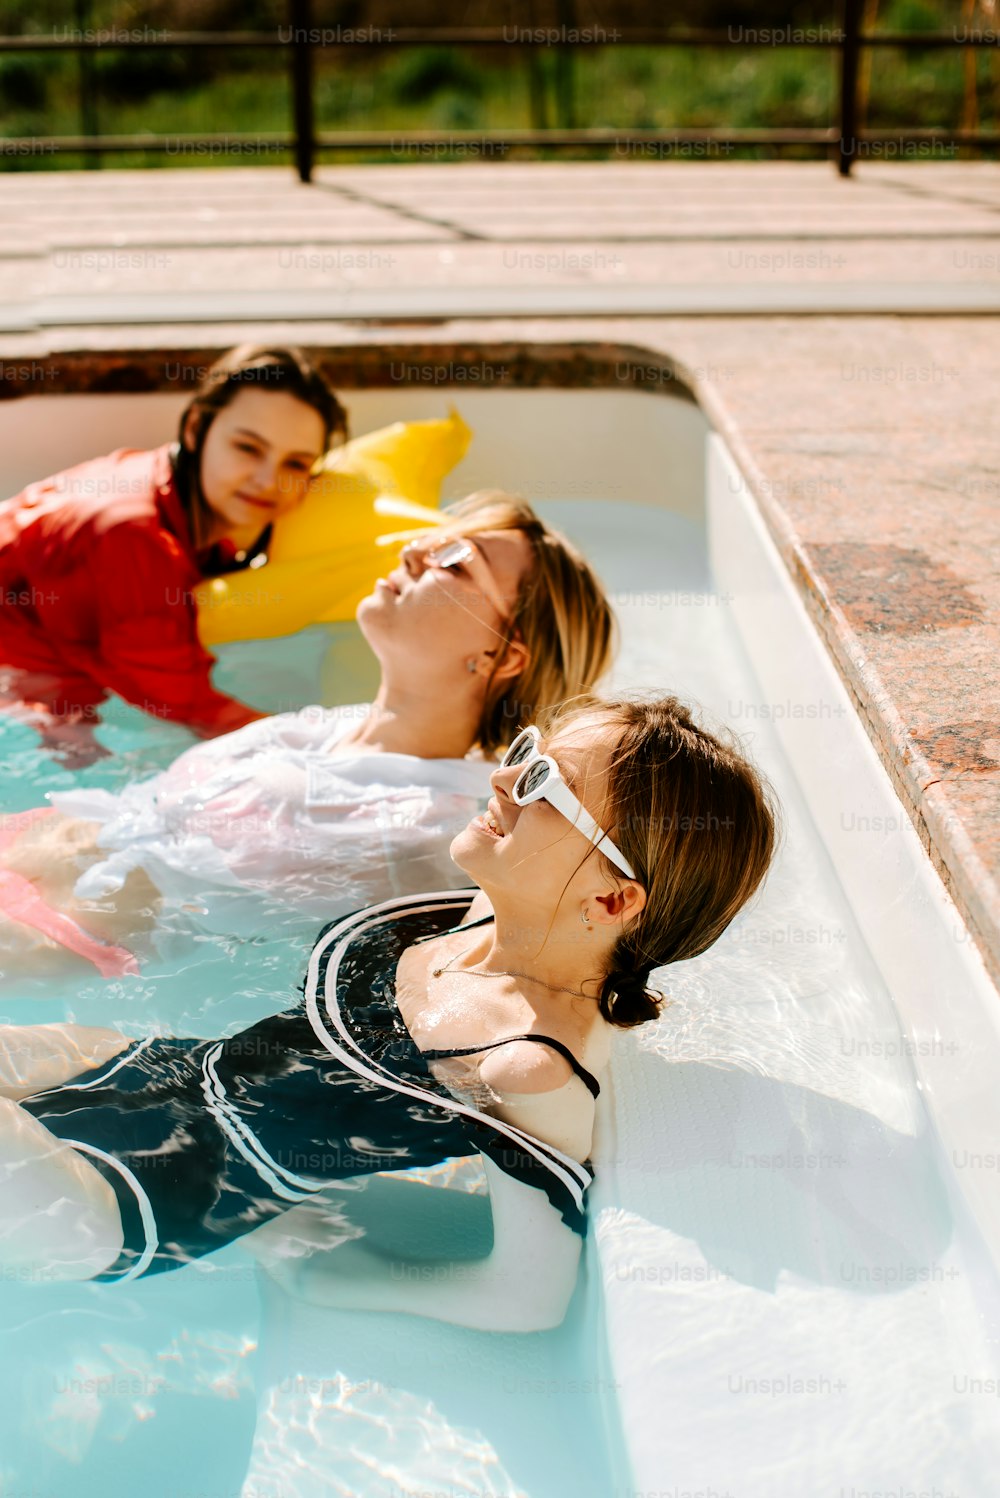 고무 오리가 있는 수영장에 있는 세 명의 여성